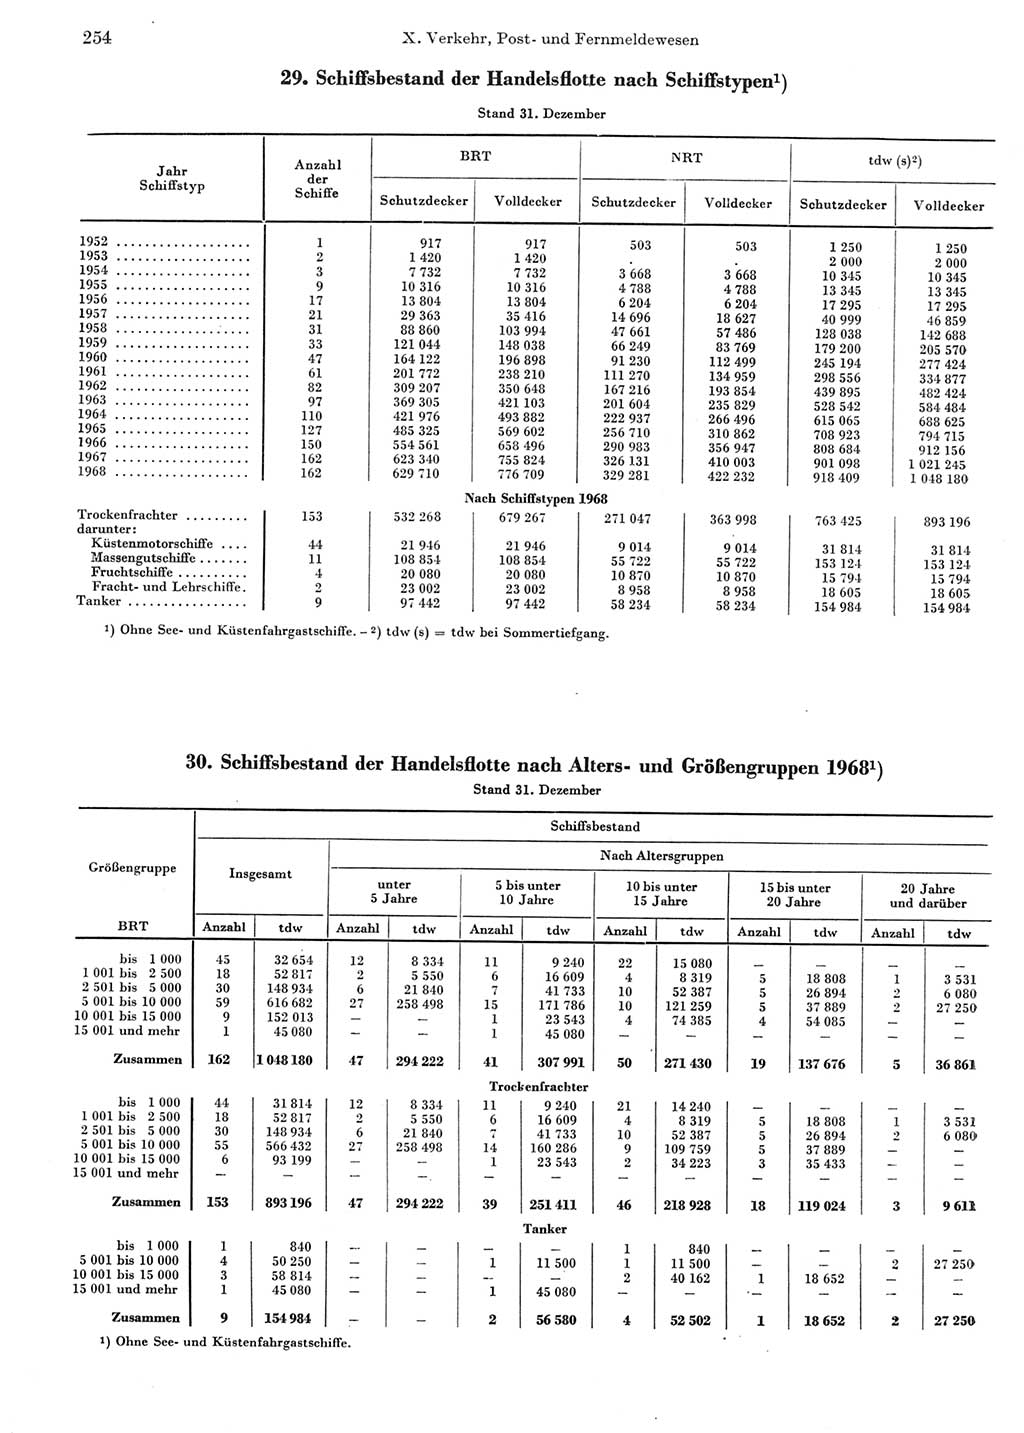 Statistisches Jahrbuch der Deutschen Demokratischen Republik (DDR) 1969, Seite 254 (Stat. Jb. DDR 1969, S. 254)